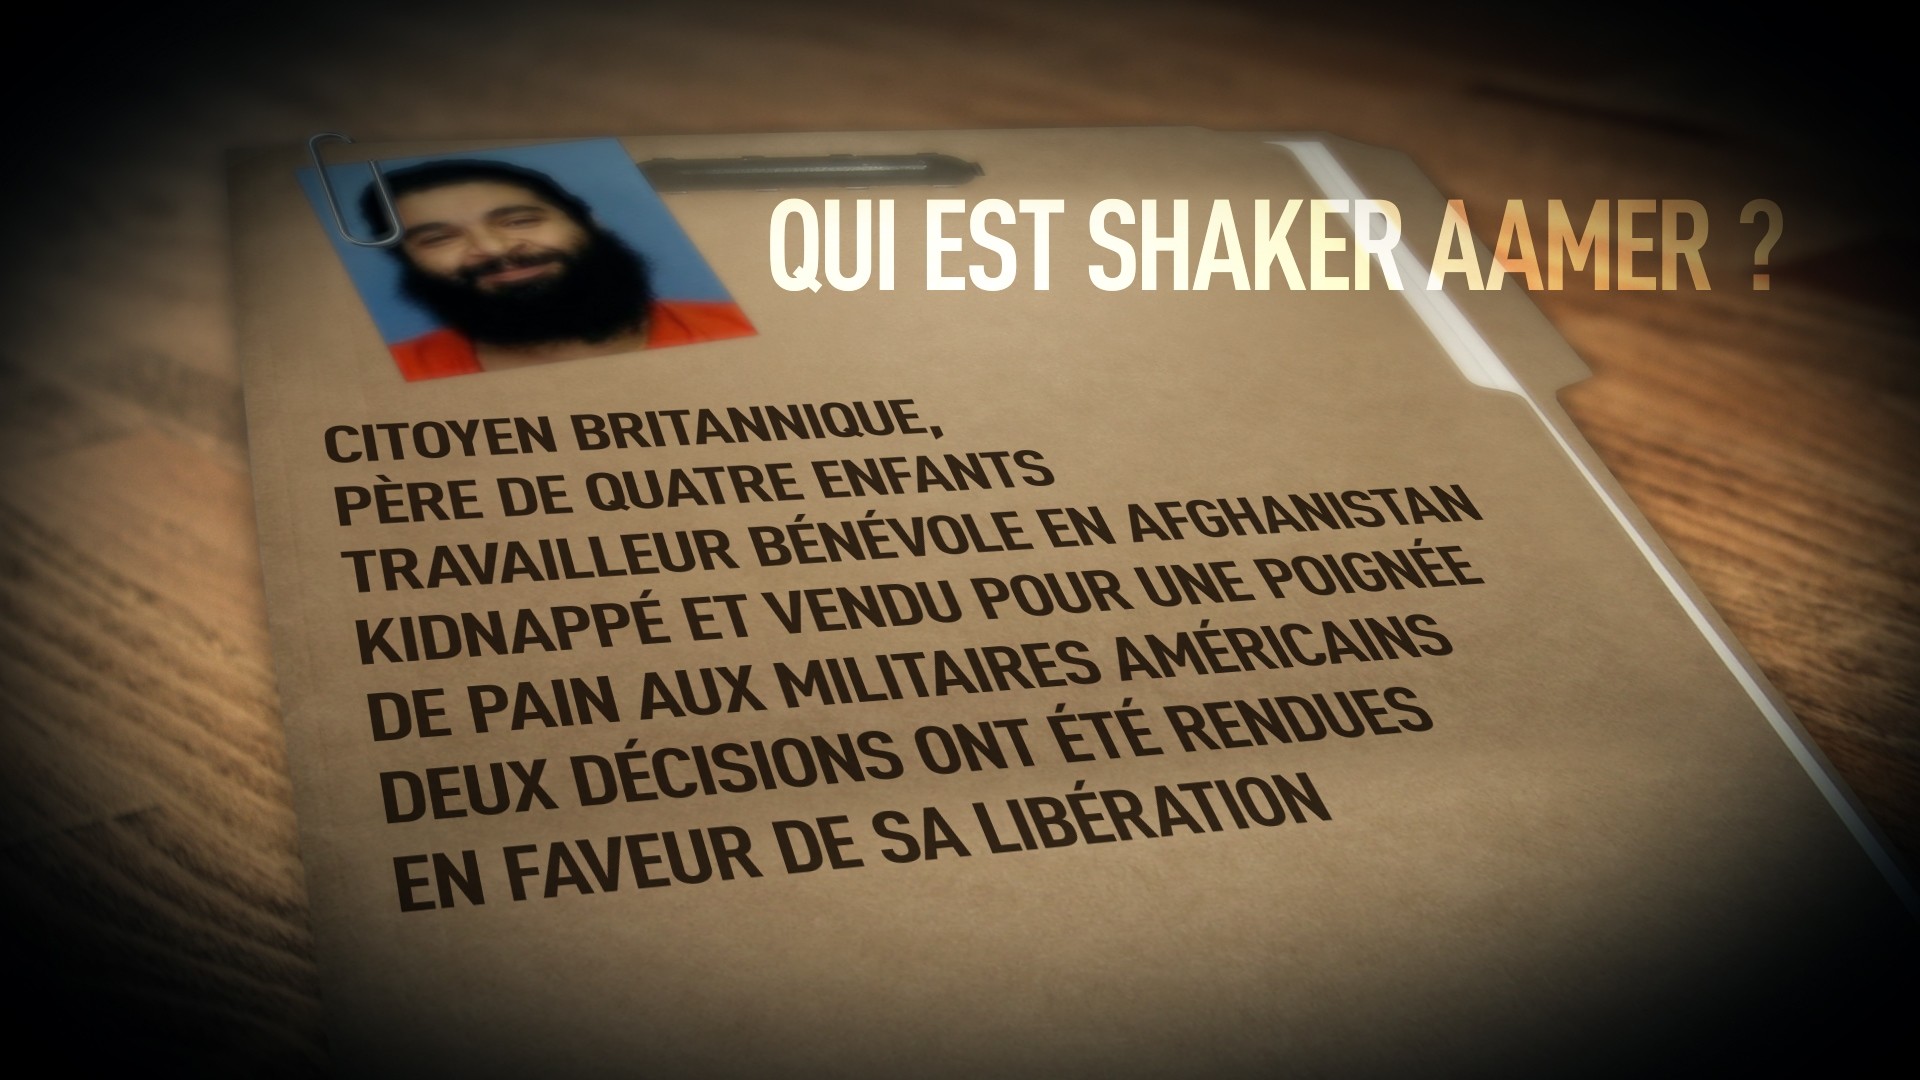 Le dernier prisonnier britannique de Guantanamo, Shaker Aamer, a été libéré